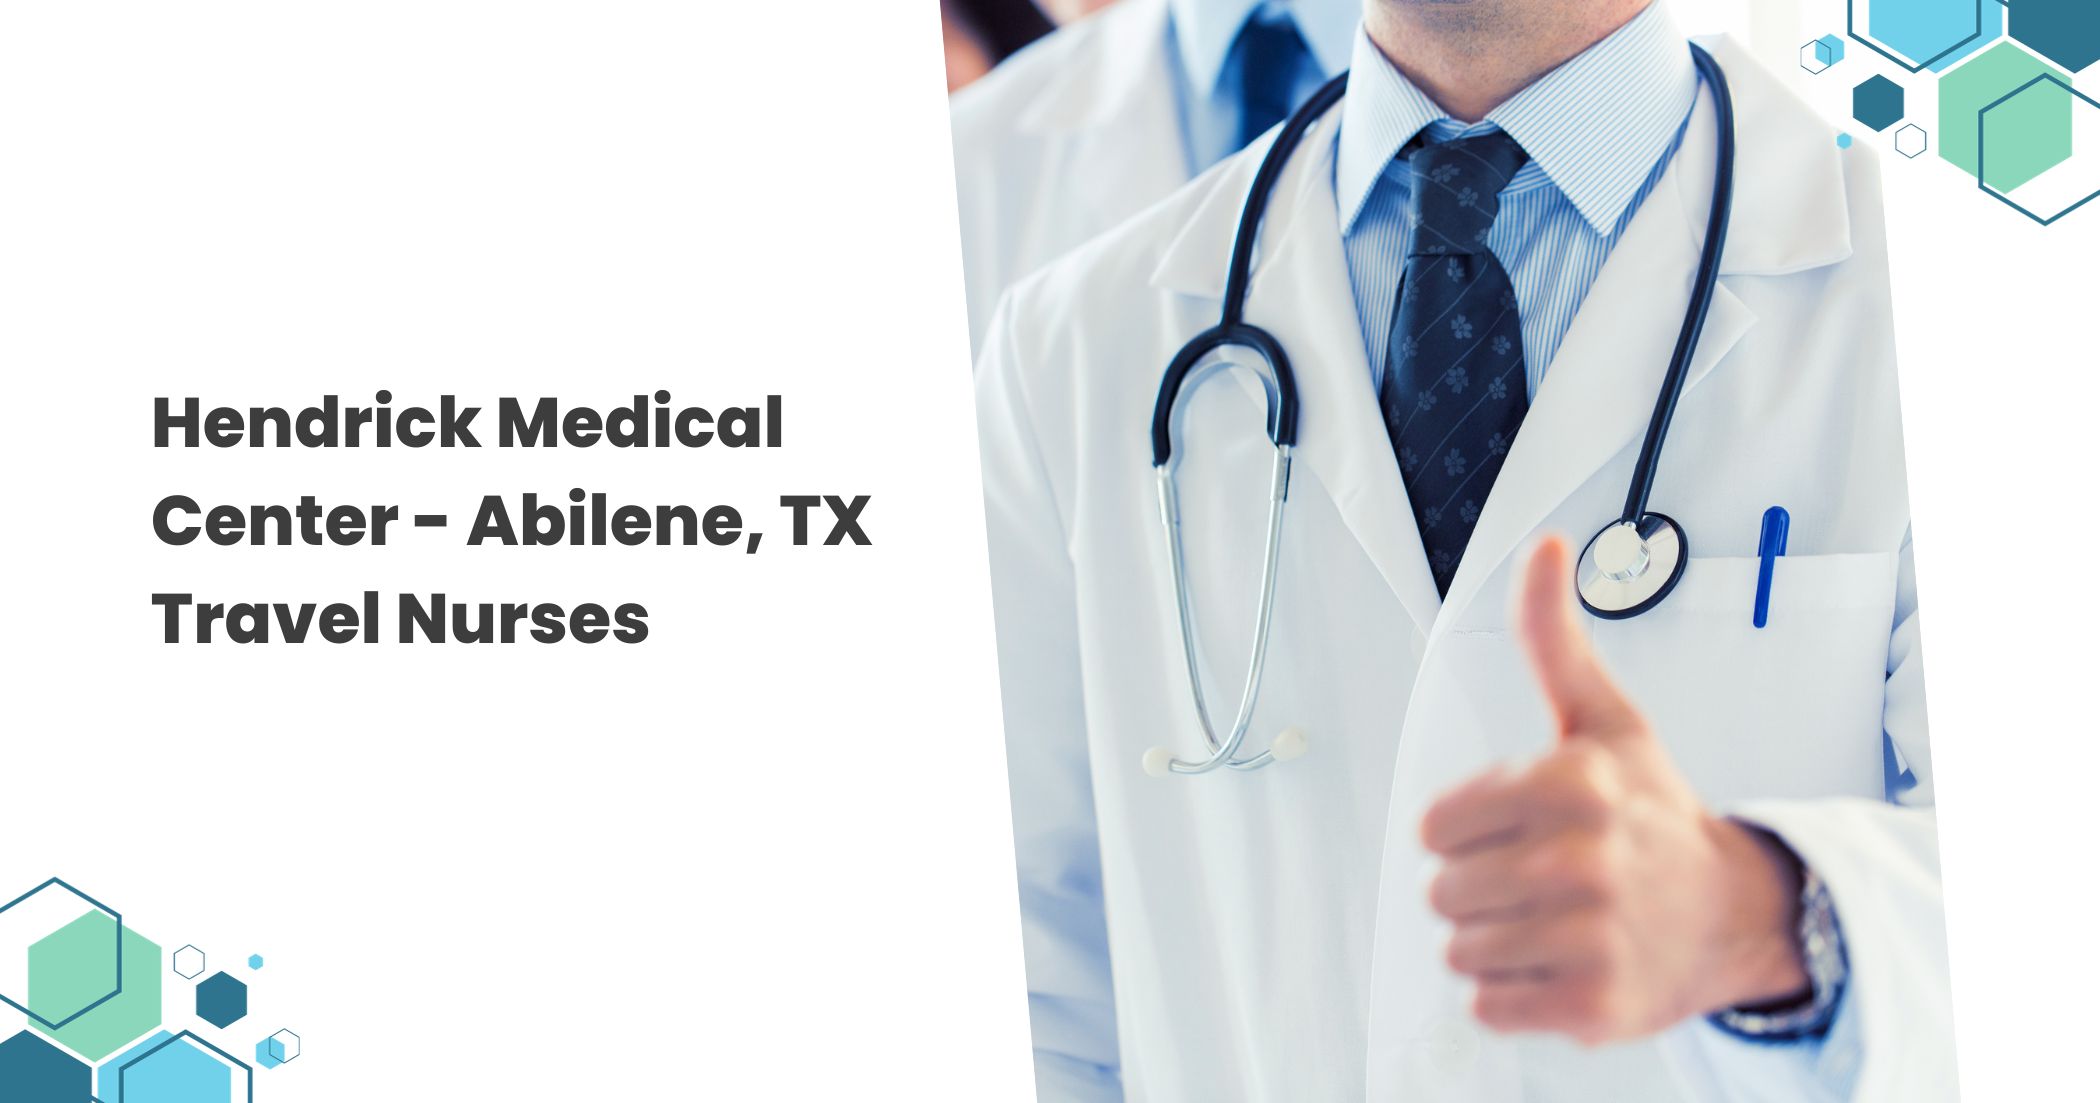 Hendrick Medical Center - Abilene, TX Travel Nurses